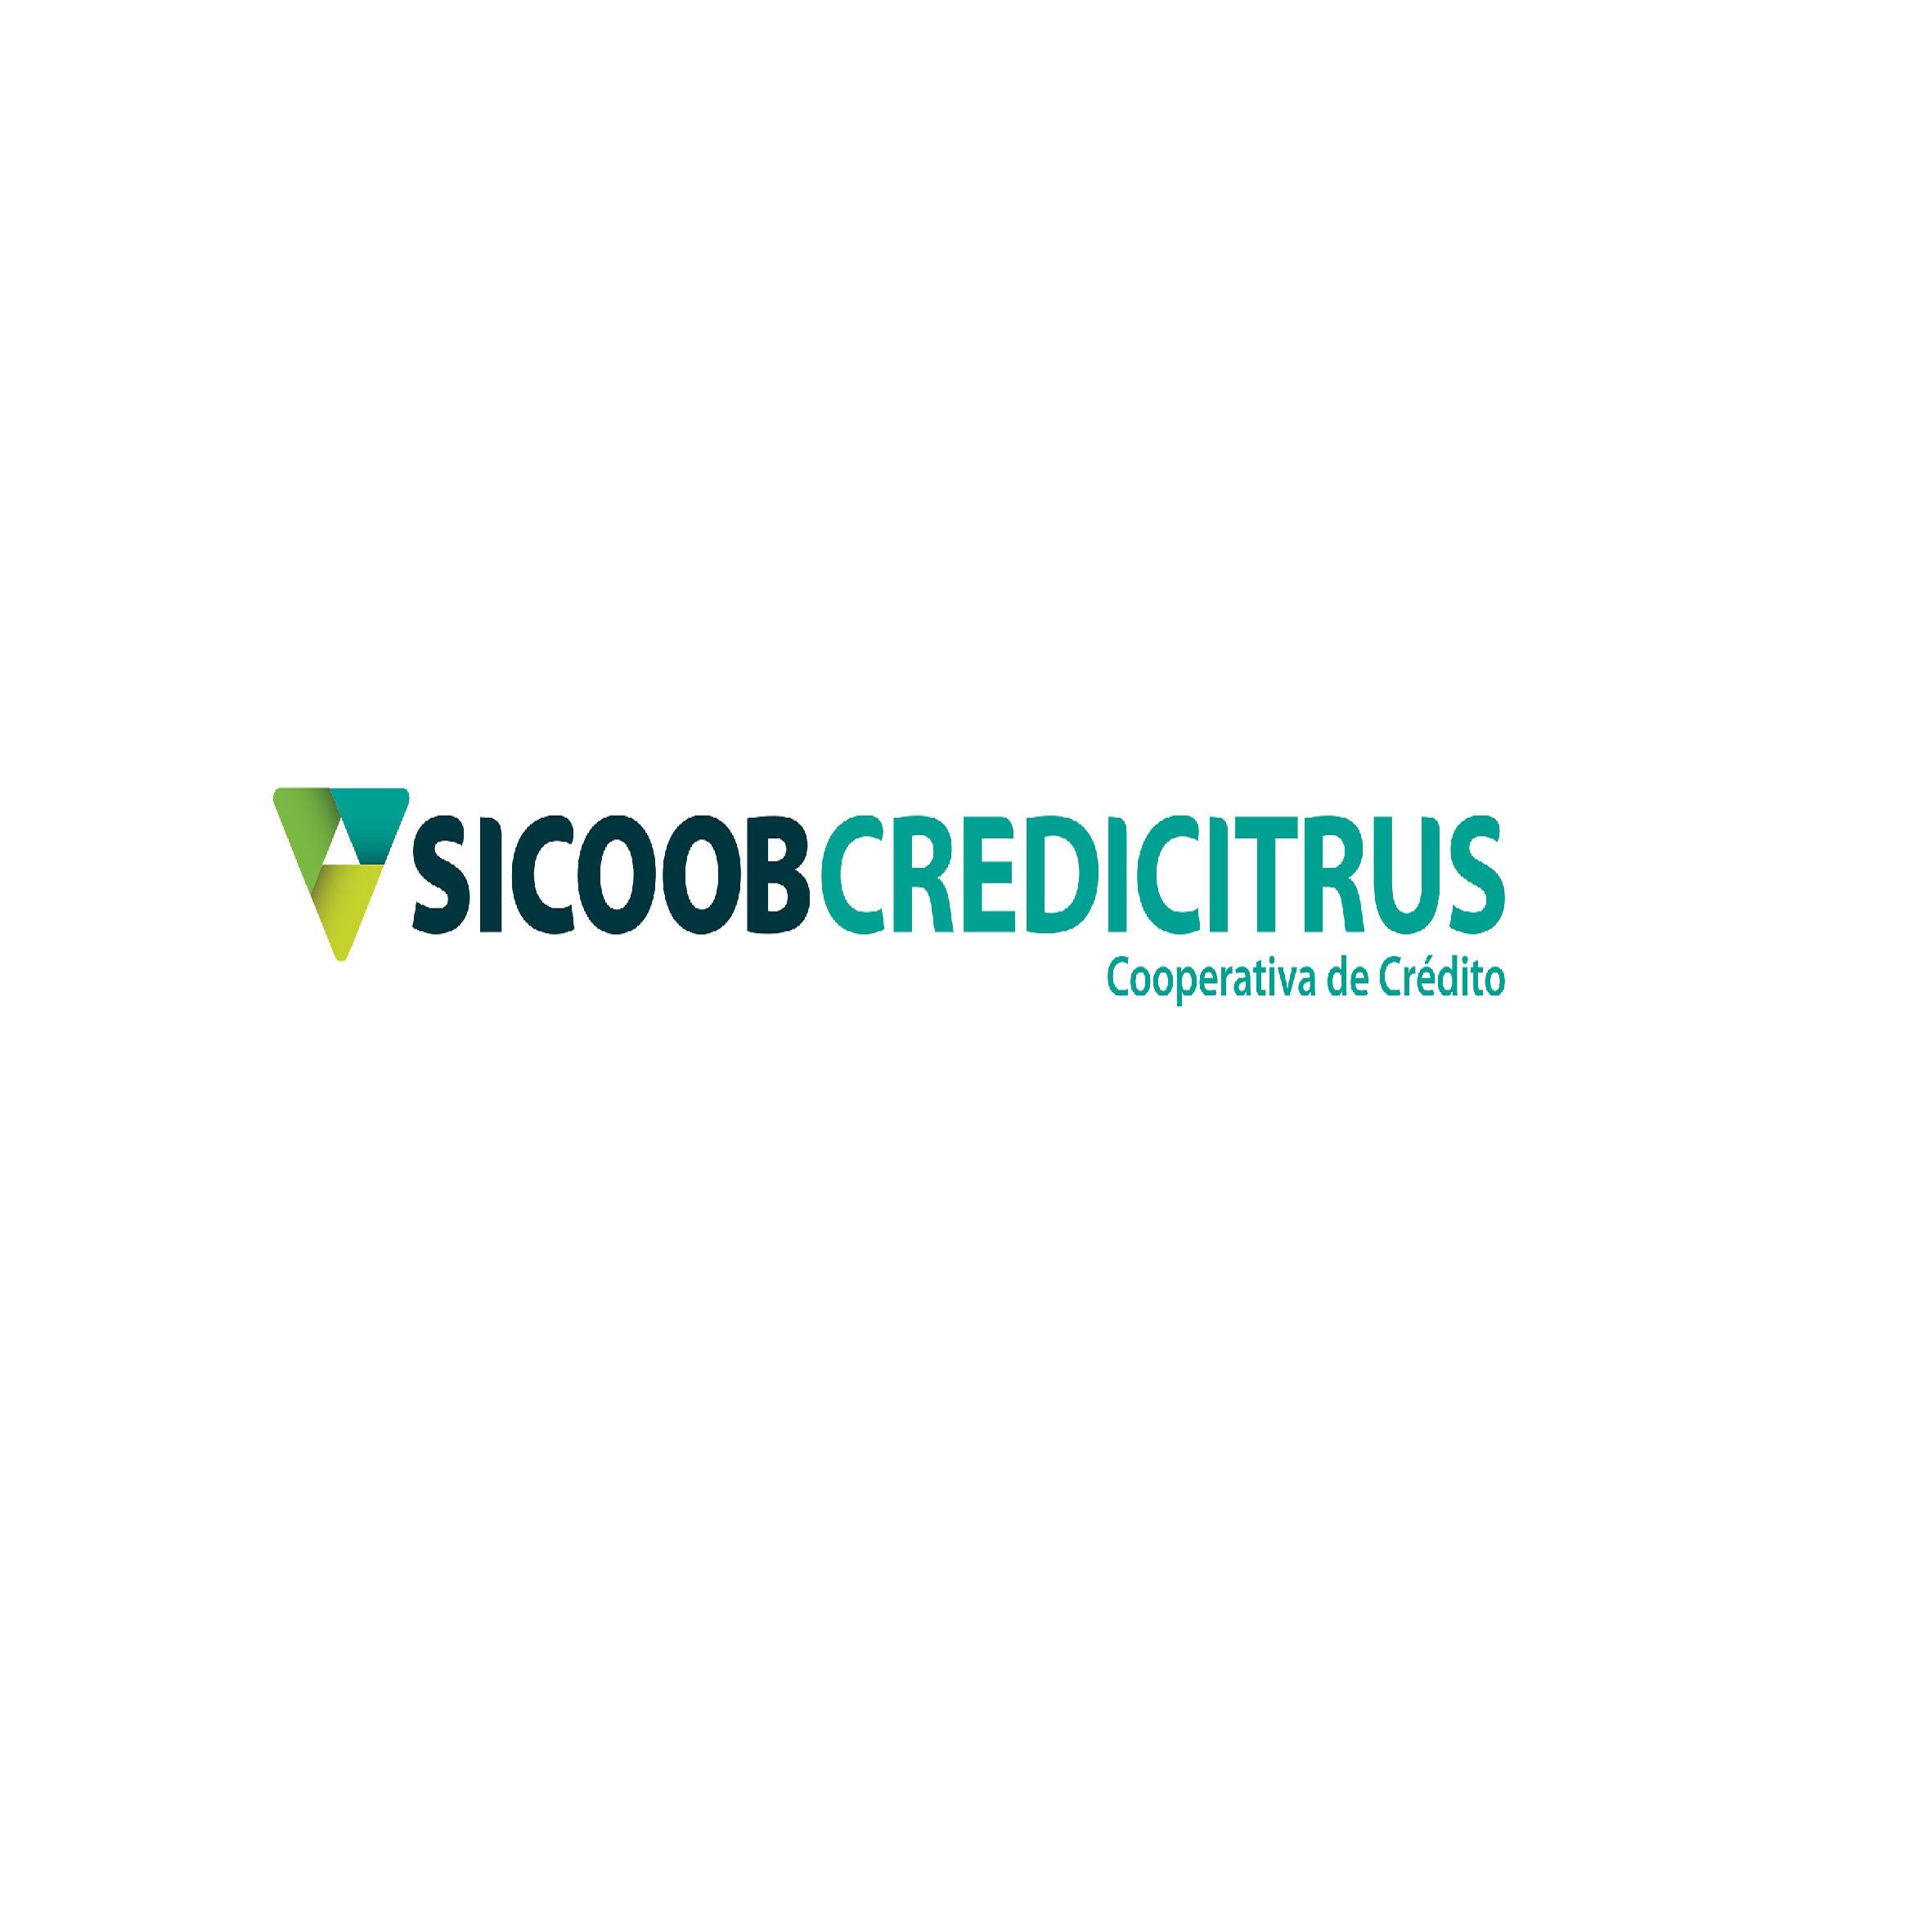 Sicoob Credicitrus